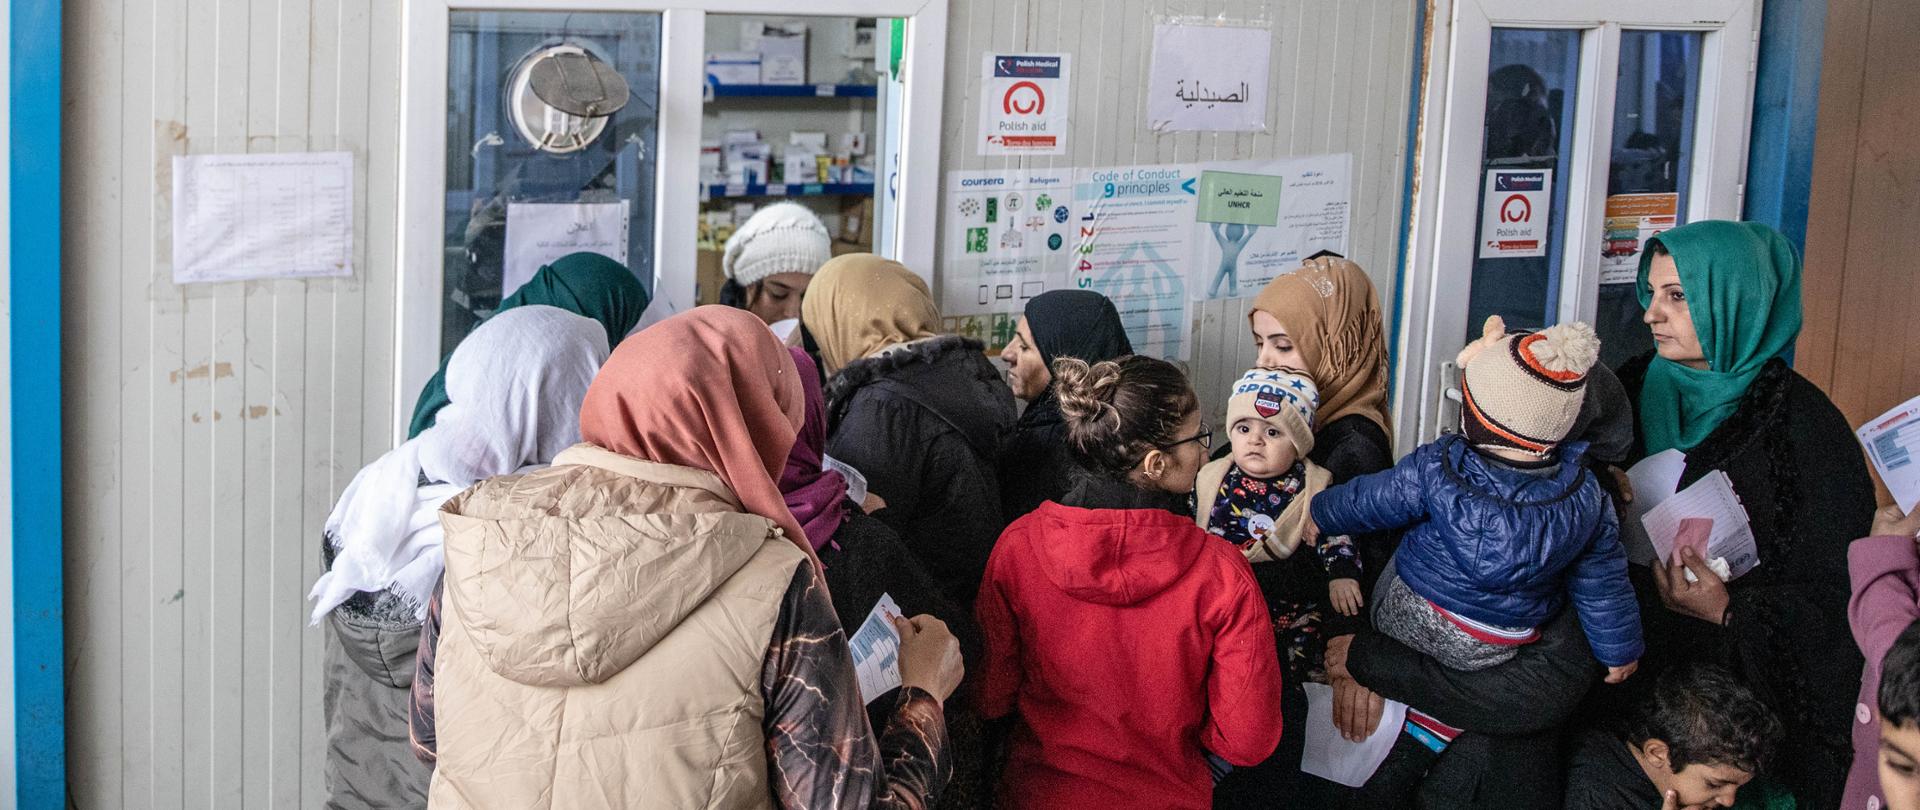 Bezpłatne leki są wydawane z okna apteki, mieszczącej się w osobnym kontenerze w obozie Qushtapa. Polska Misja Medyczna zwiększyła ponad dwukrotnie dostawy leków, lekarze klinki leczą miesięcznie ponad 2600 pacjentów. Farmaceutka Farah Khawaja Shahid wydaje leki kobietom. Farah mówi po arabsku i kurdyjsku, podobnie jak wszyscy pracownicy kliniki mobilnej, aby móc komunikować się z pacjentami z Syrii i Iraku.